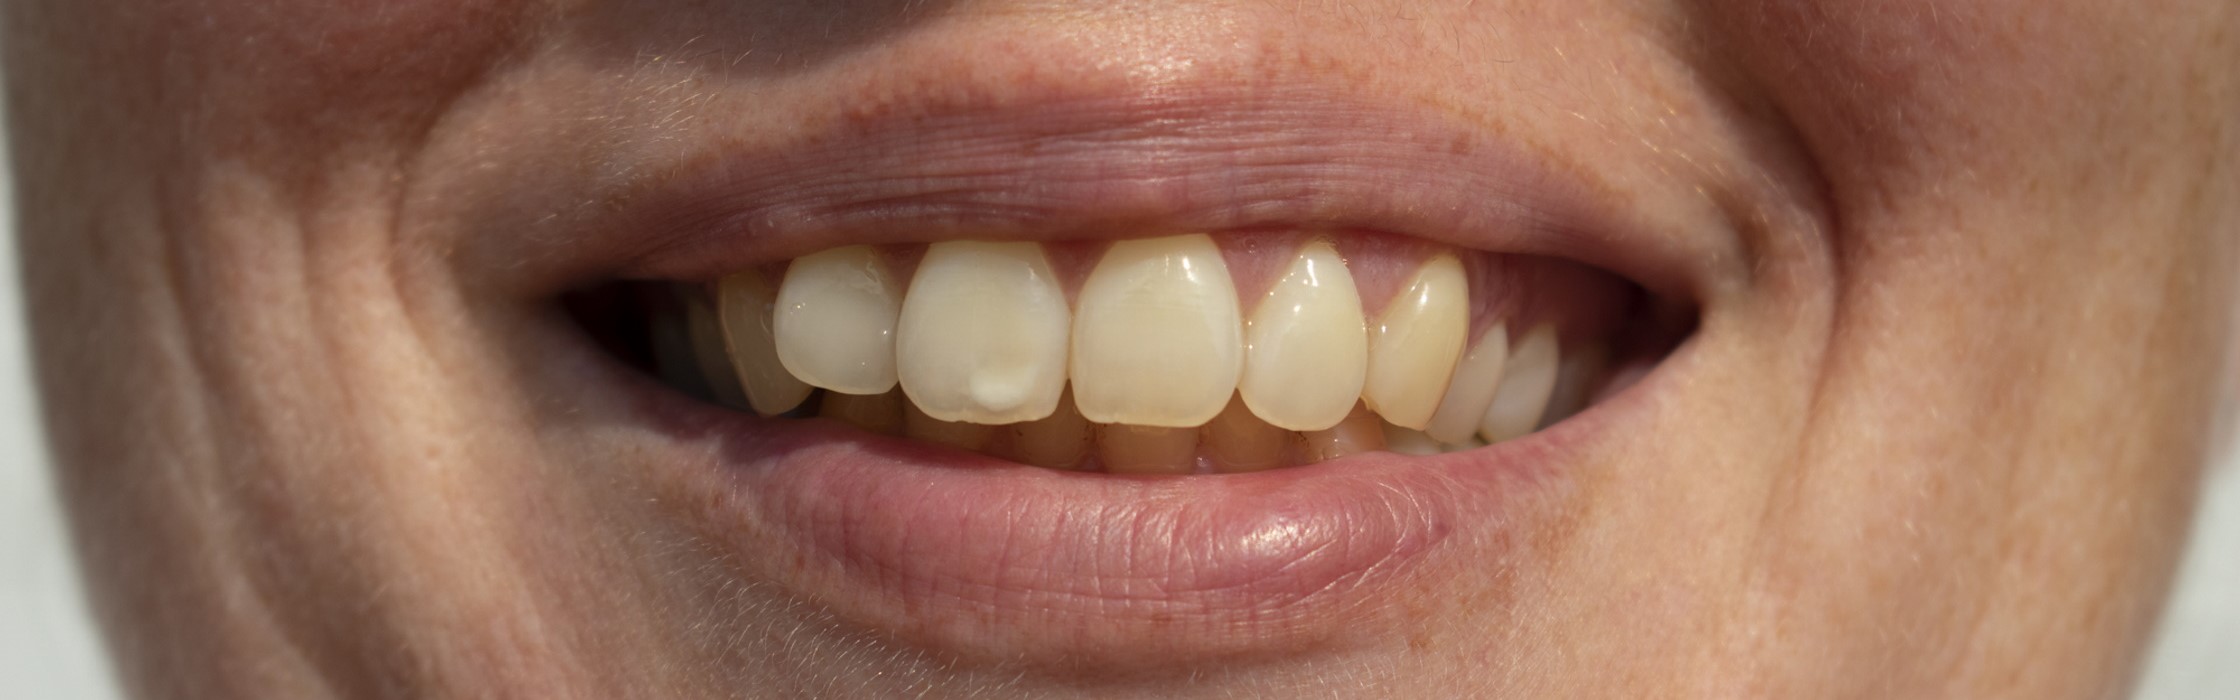 Weiße Flecken auf den Zähnen: Das sind die Ursachen